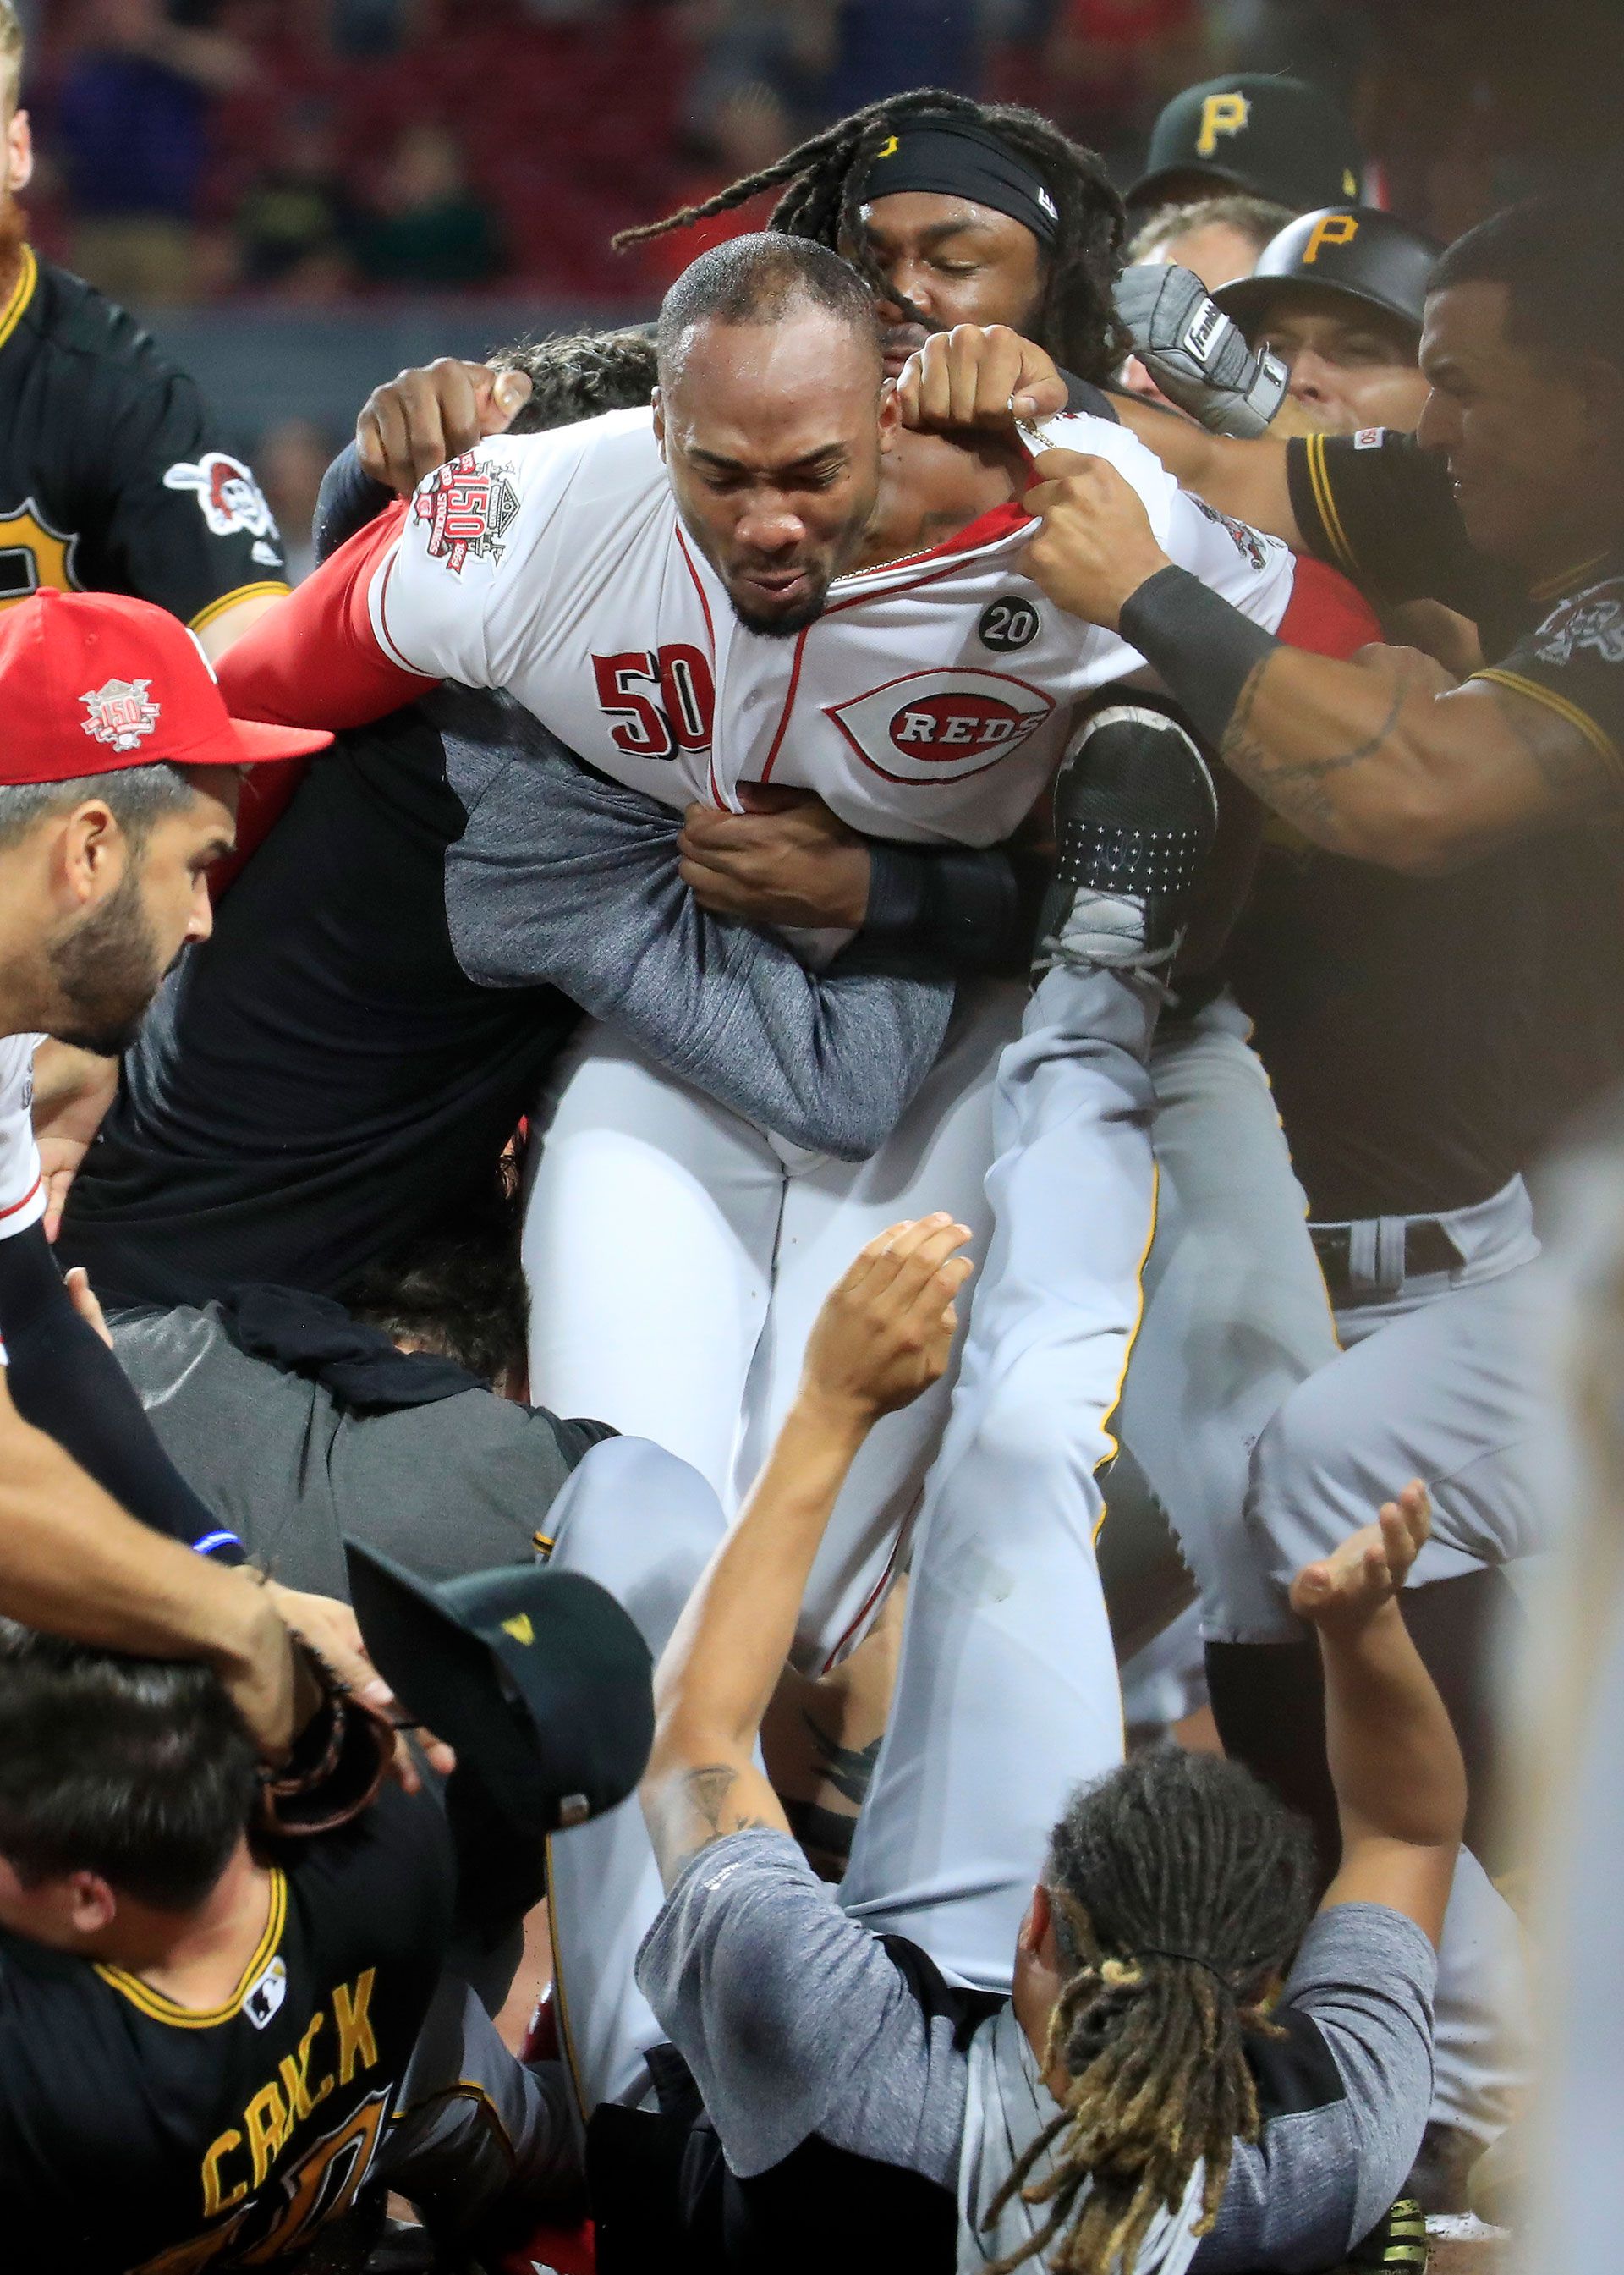 (AFP) Fue una de las peleas más violentas de la MLB